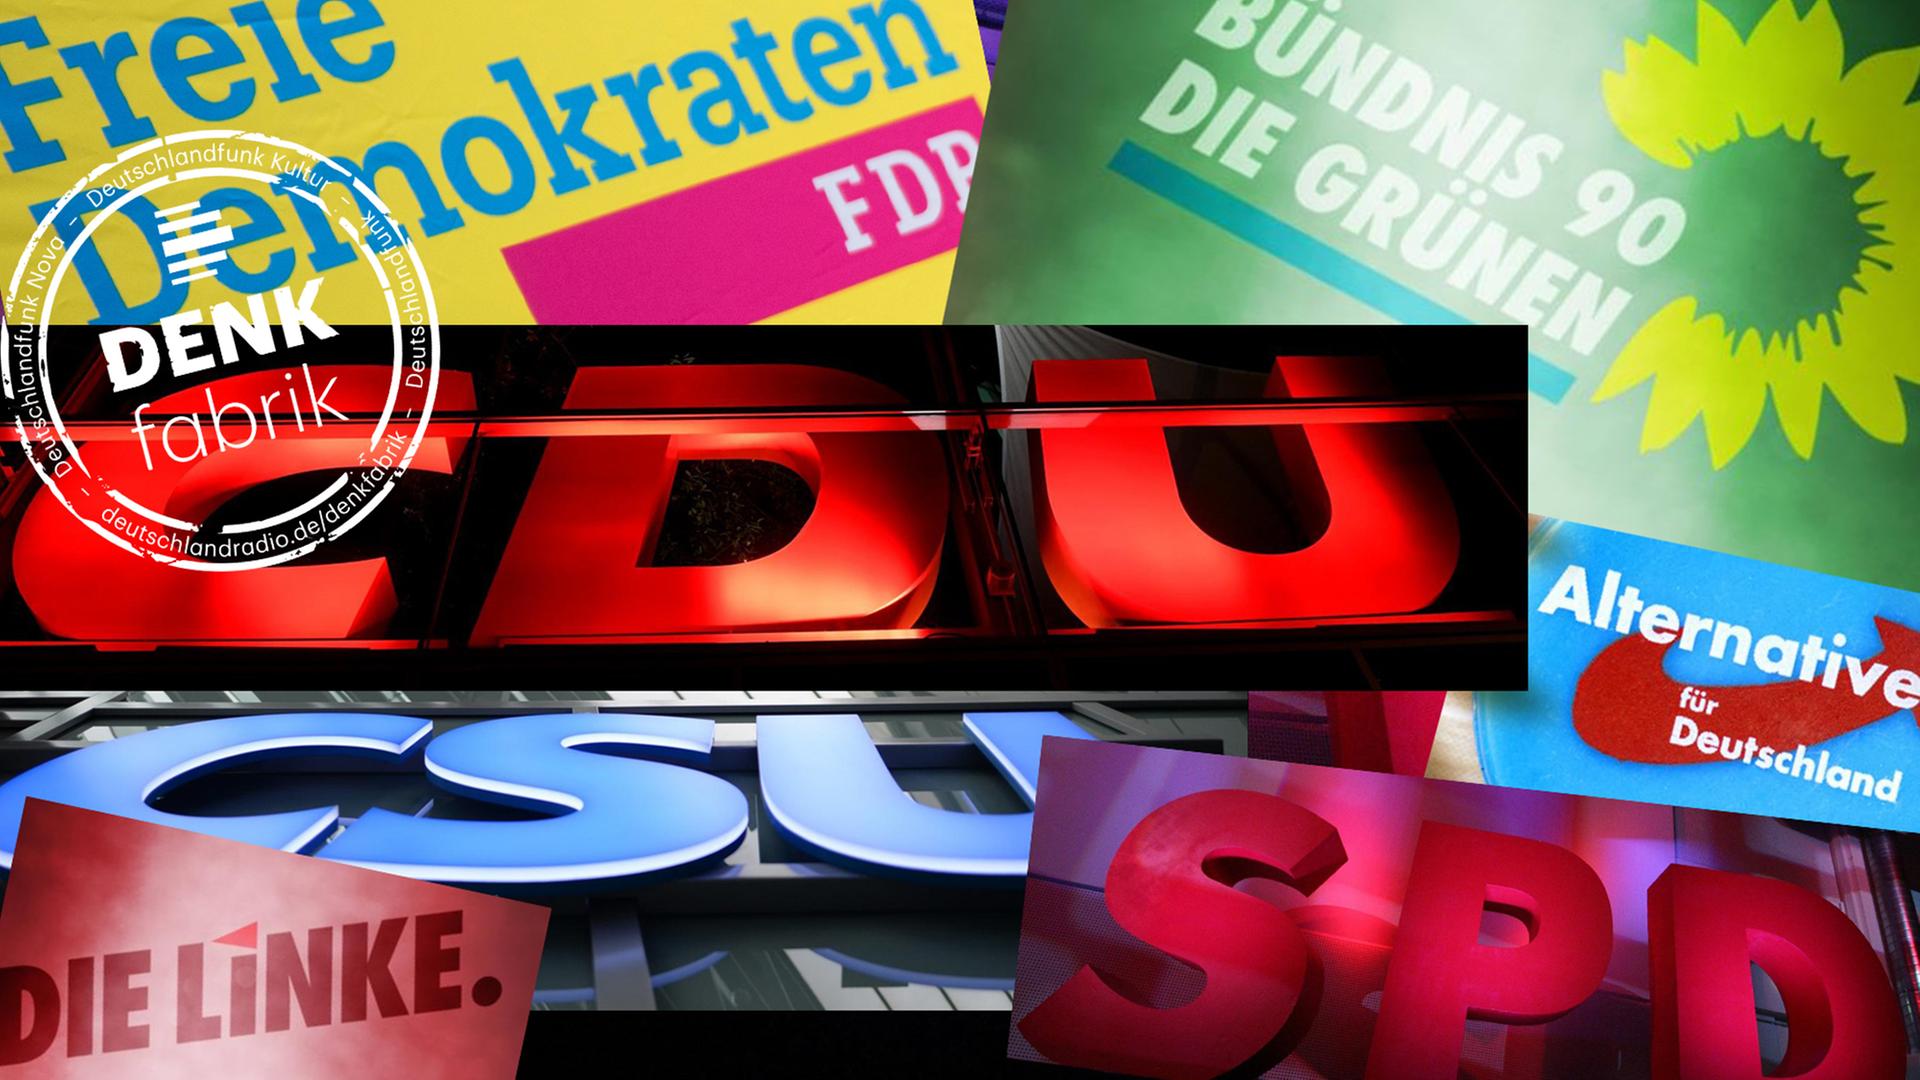 Logos der Die Logos der Parteien CDU, CSU, SPD, die Grünen, FDP, Die Linke und AfD in einer Collage angeordnet. Im Bild ein weißer Stempel mit Schrift "Denkfabrik" des Deutschalndfunk